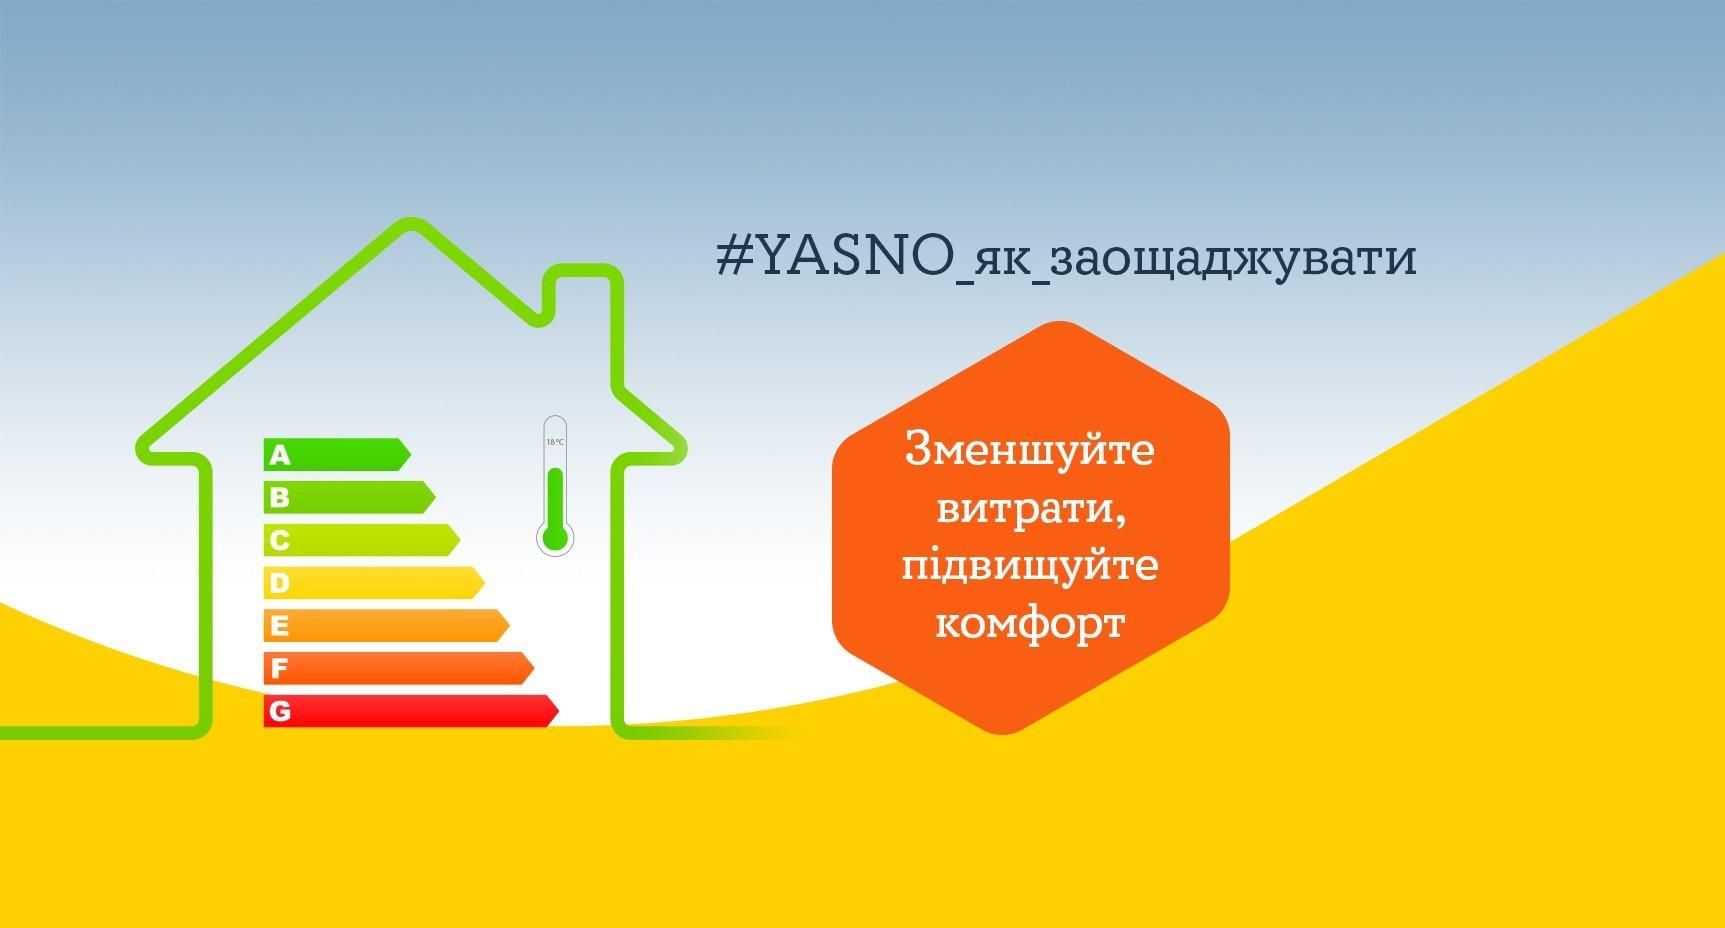 Проект "YASNO_як_заощаджувати" 